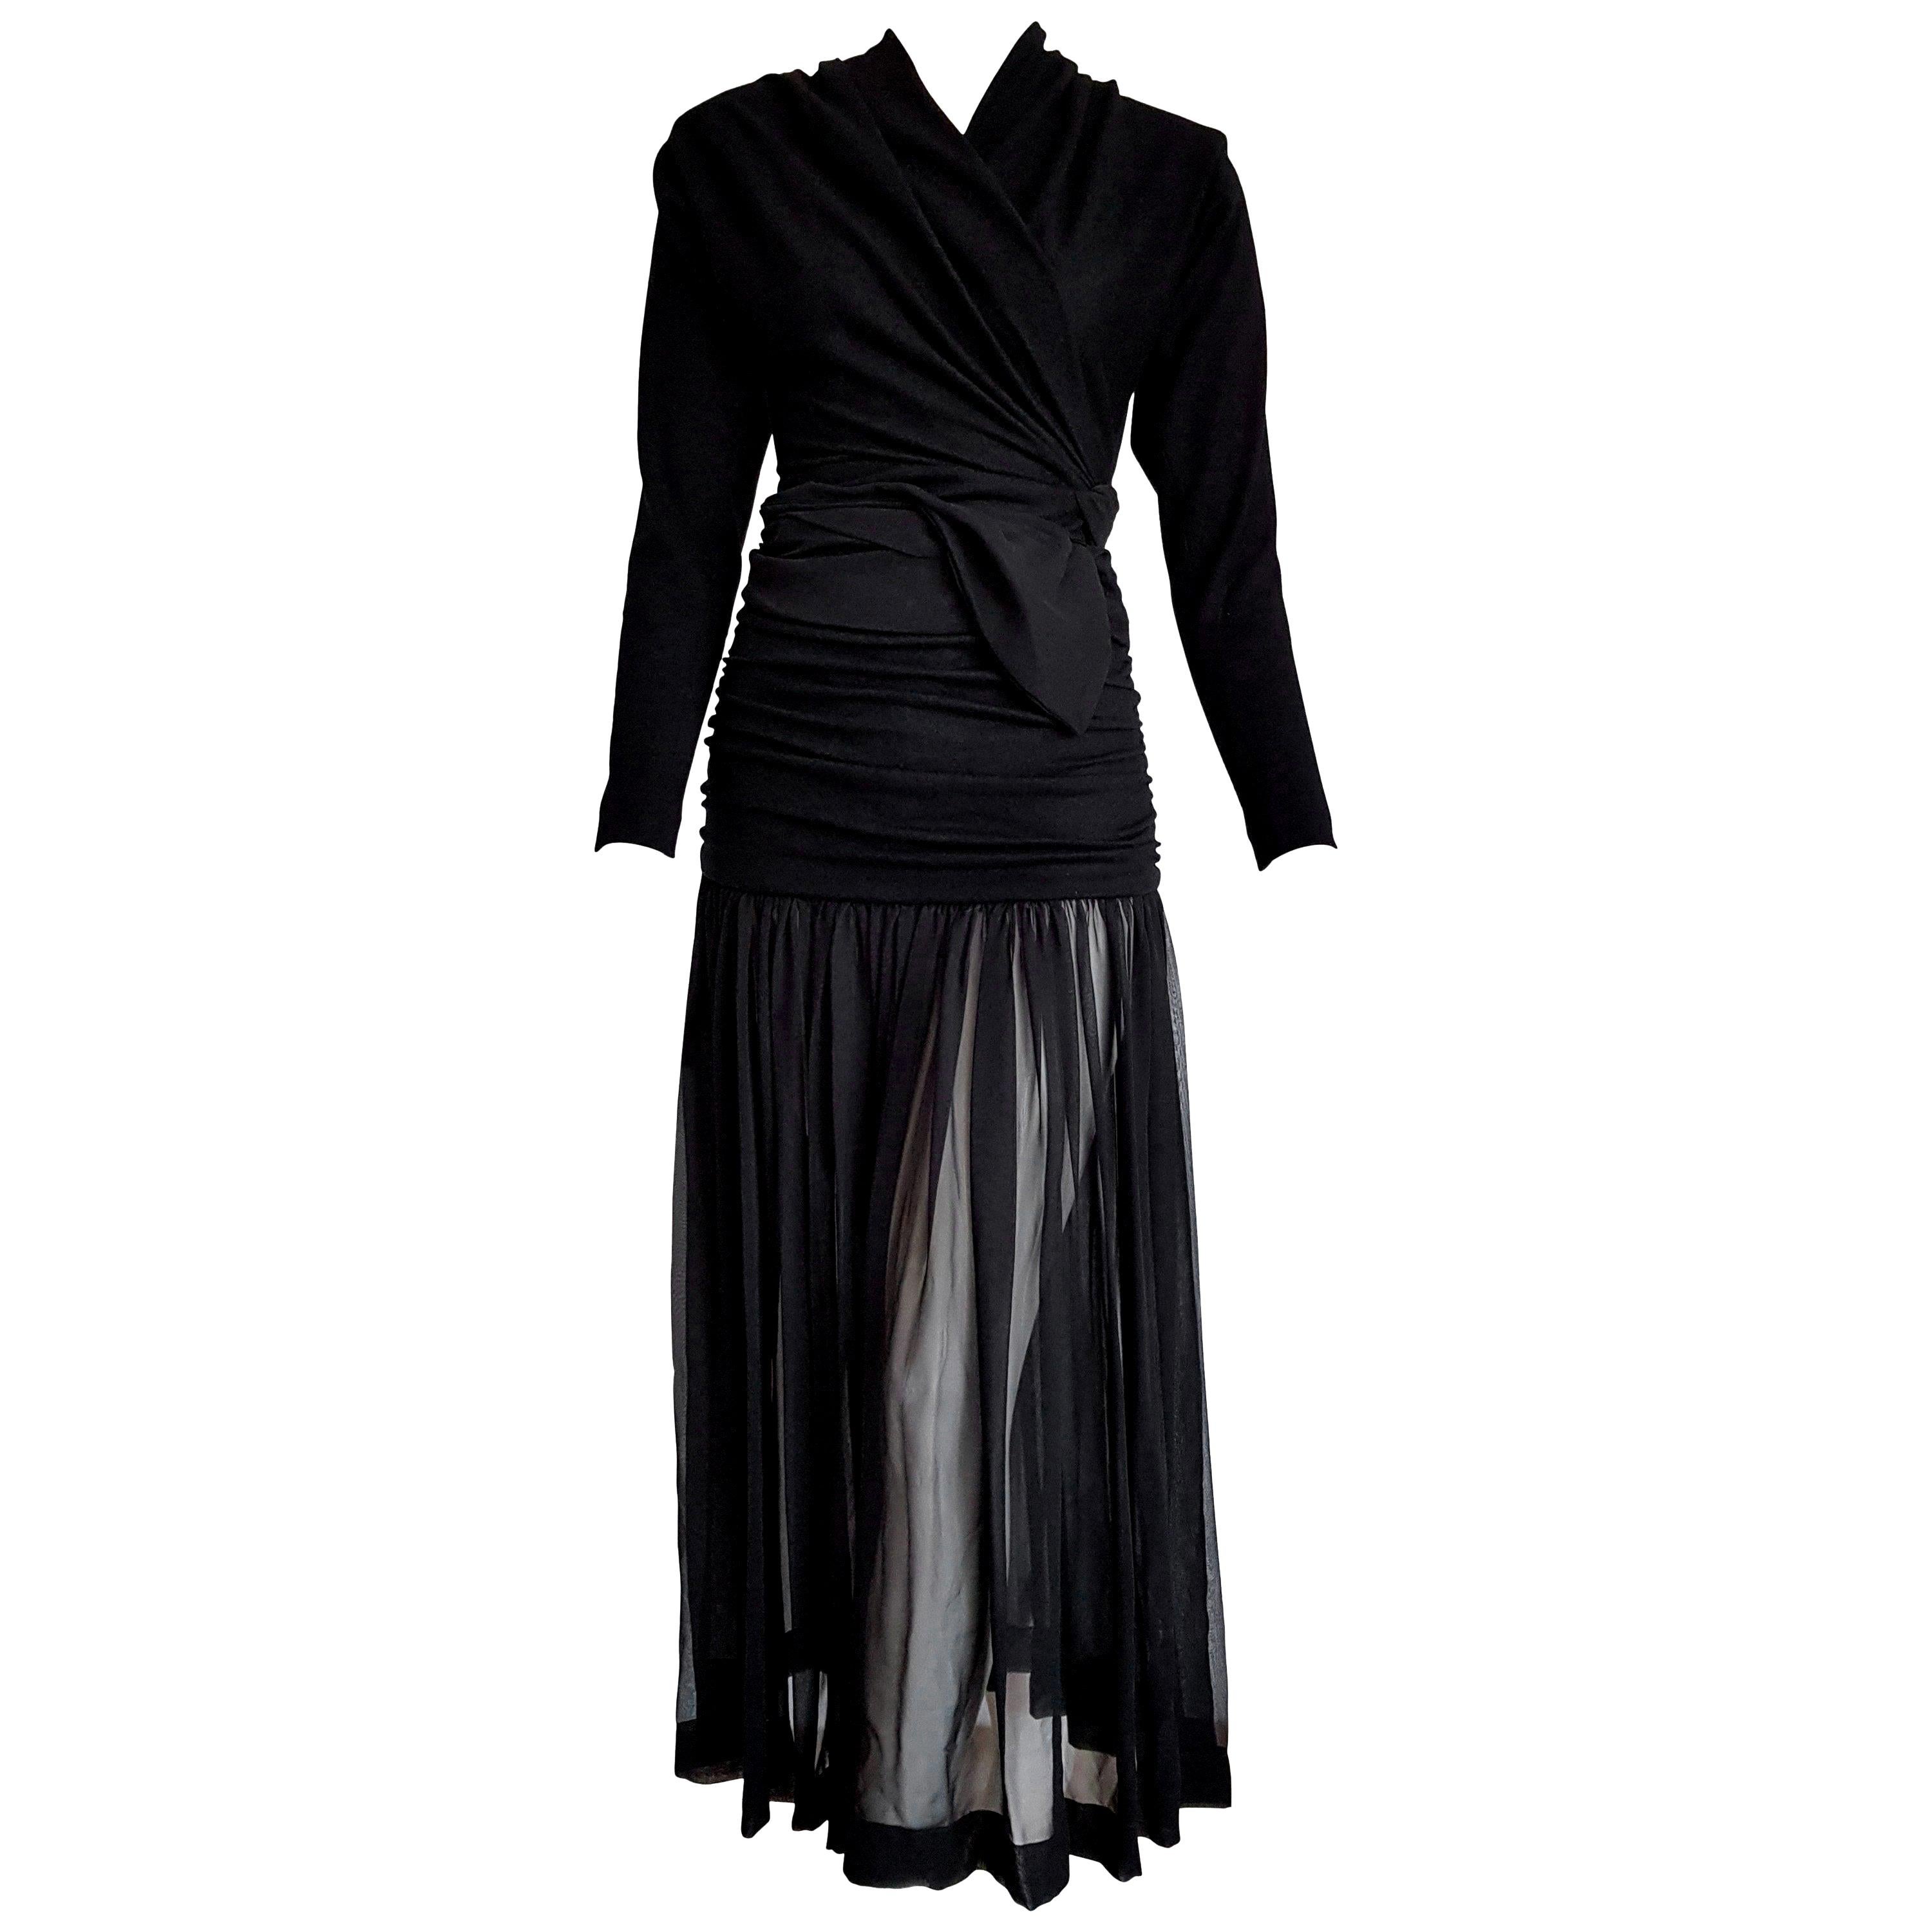 Isabelle ALLARD Paris "New" High Wool Waistband Chiffon Skirt Black Dress-Unworn For Sale